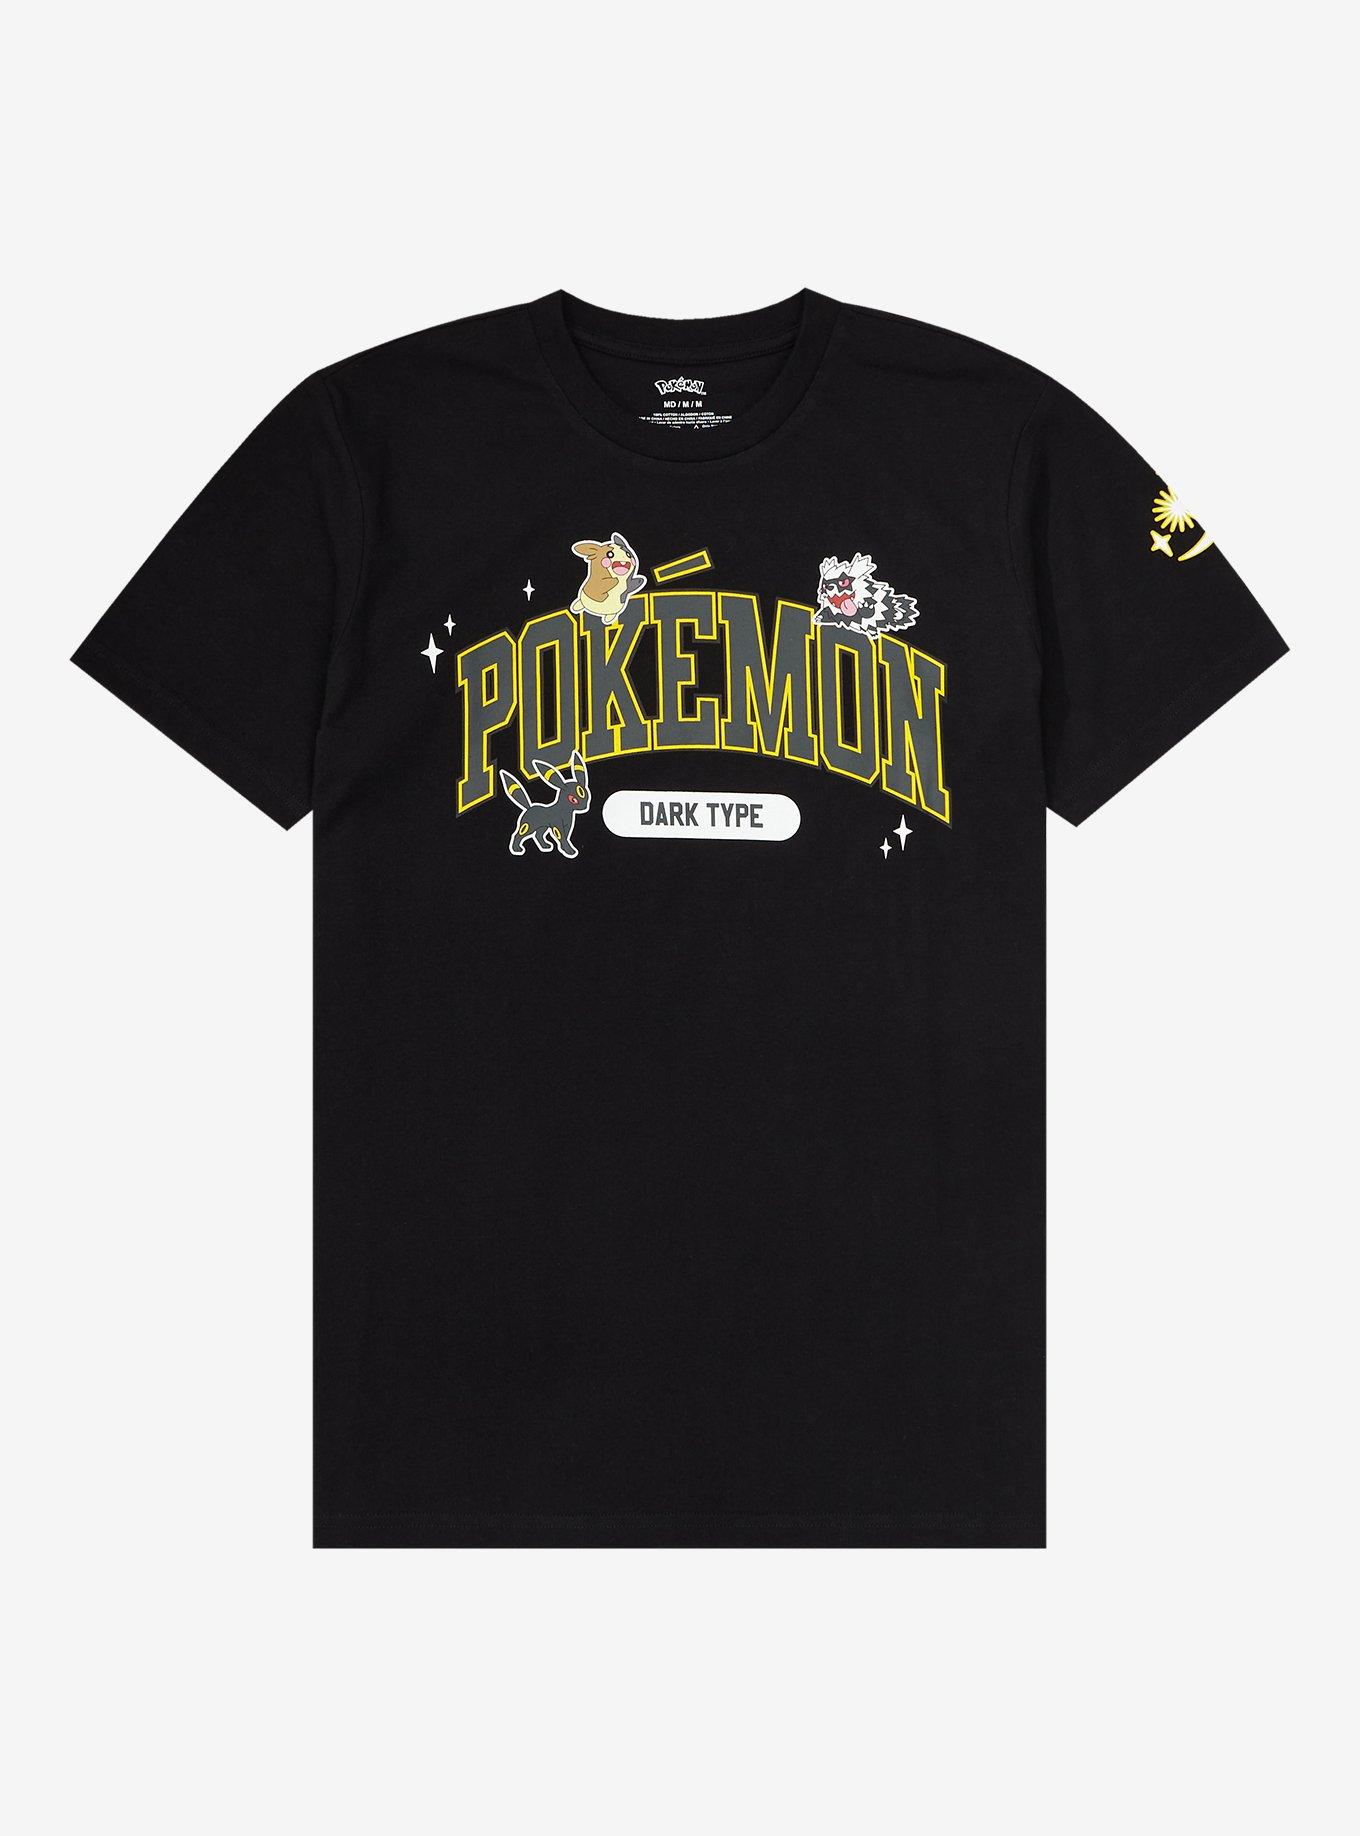 Pokémon Dark Type T-Shirt - BoxLunch Exclusive | BoxLunch